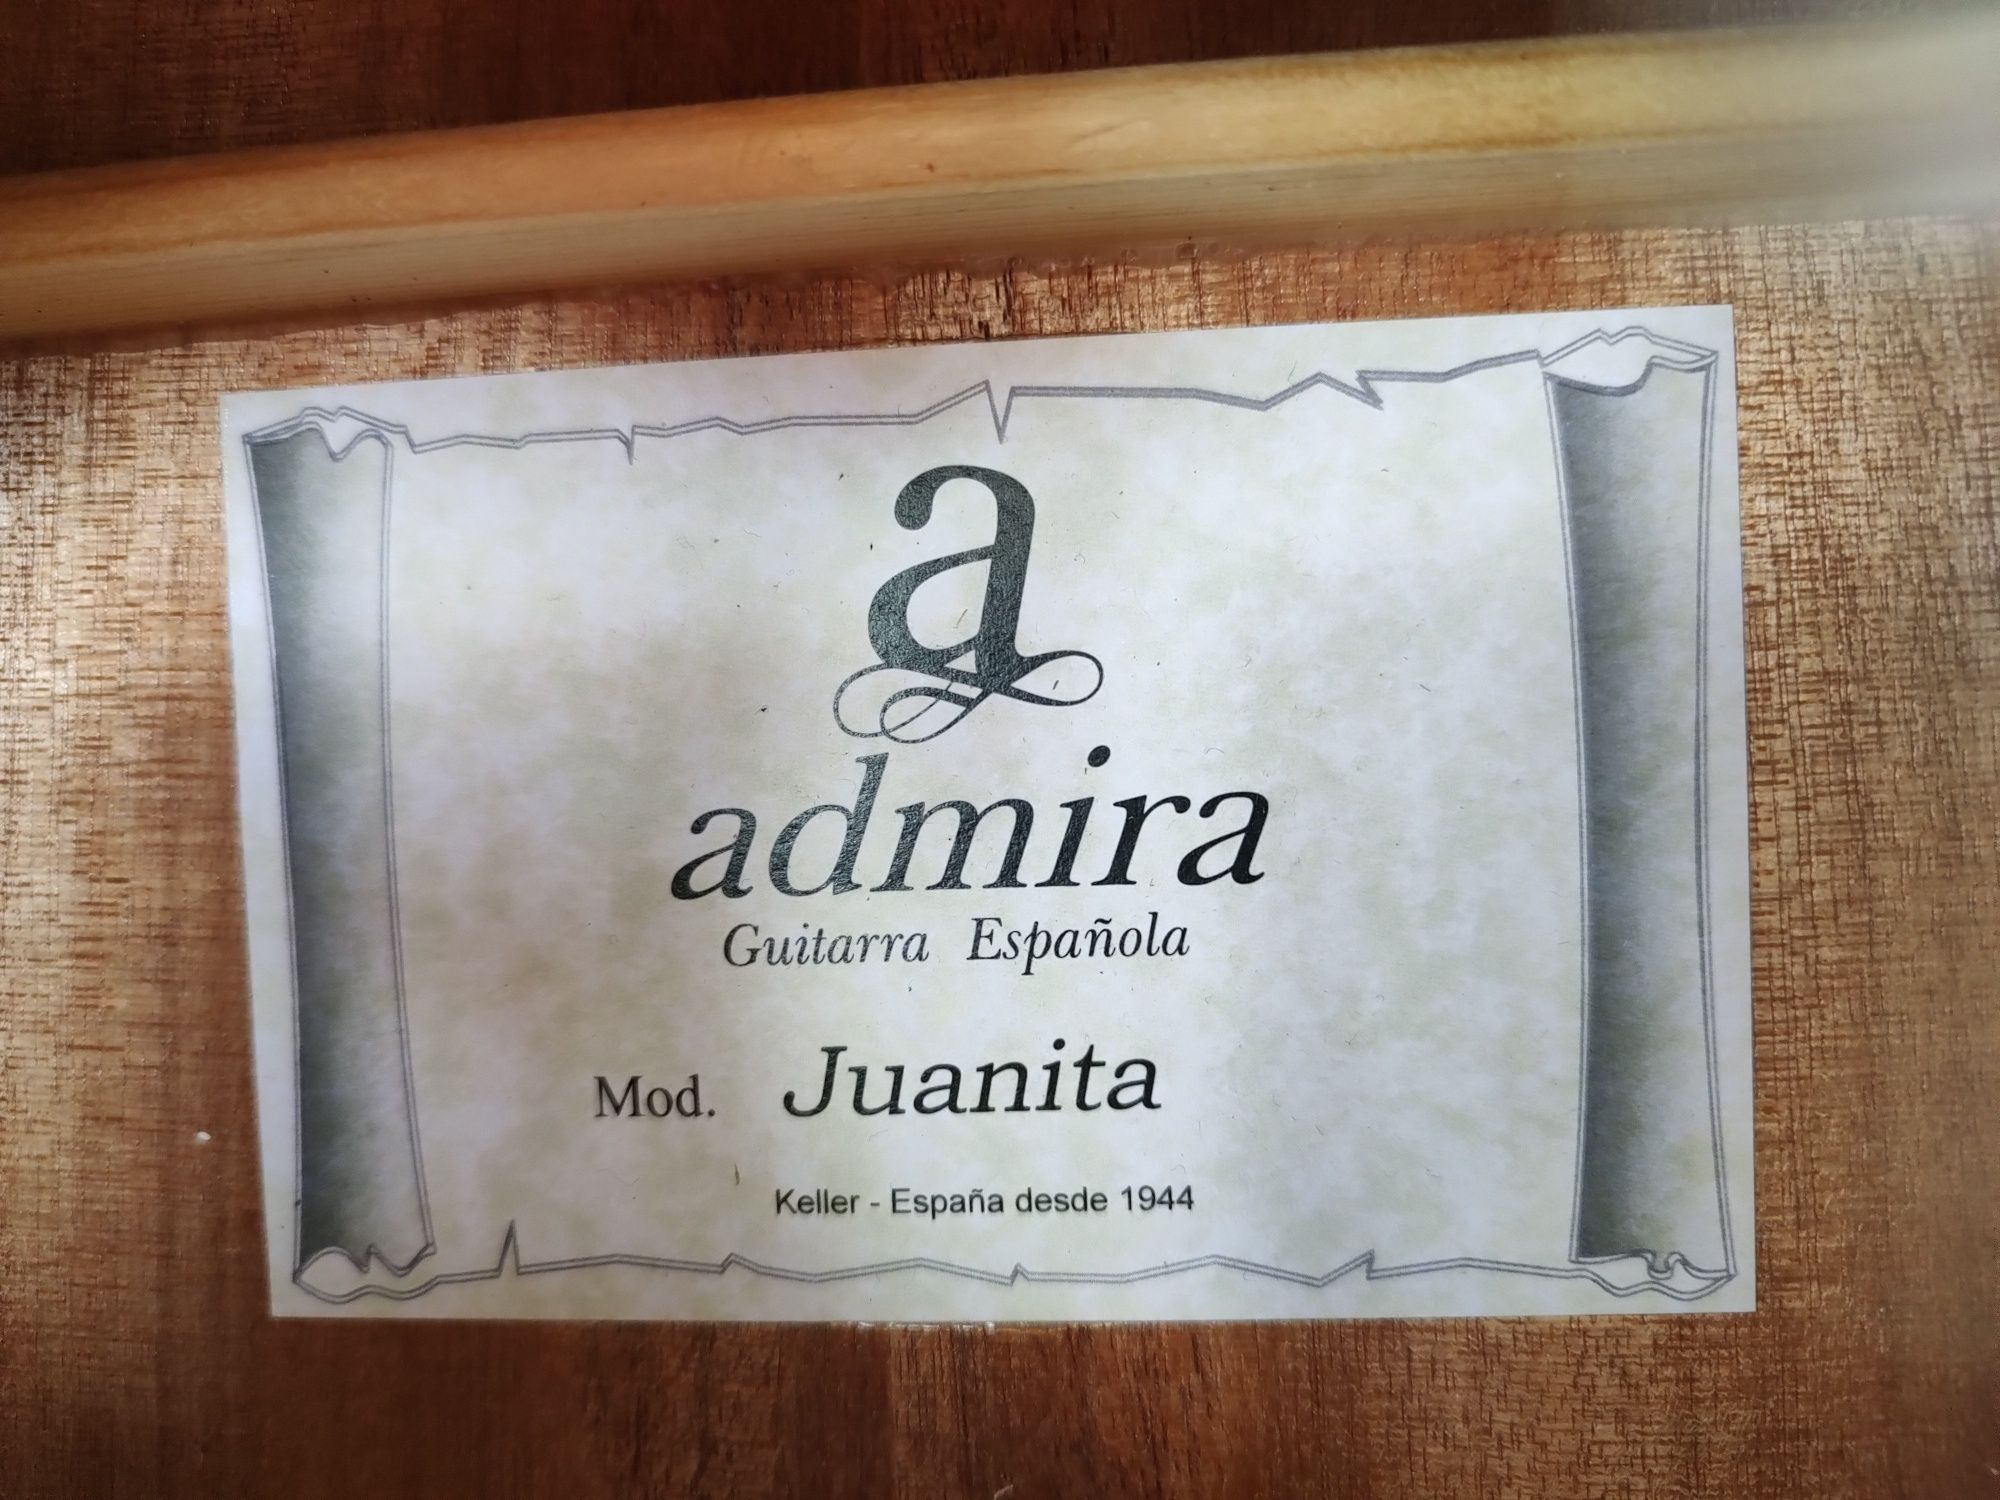 NOWA Admira Juanita piękna gitara klasyczna Świetne brzmienie !!